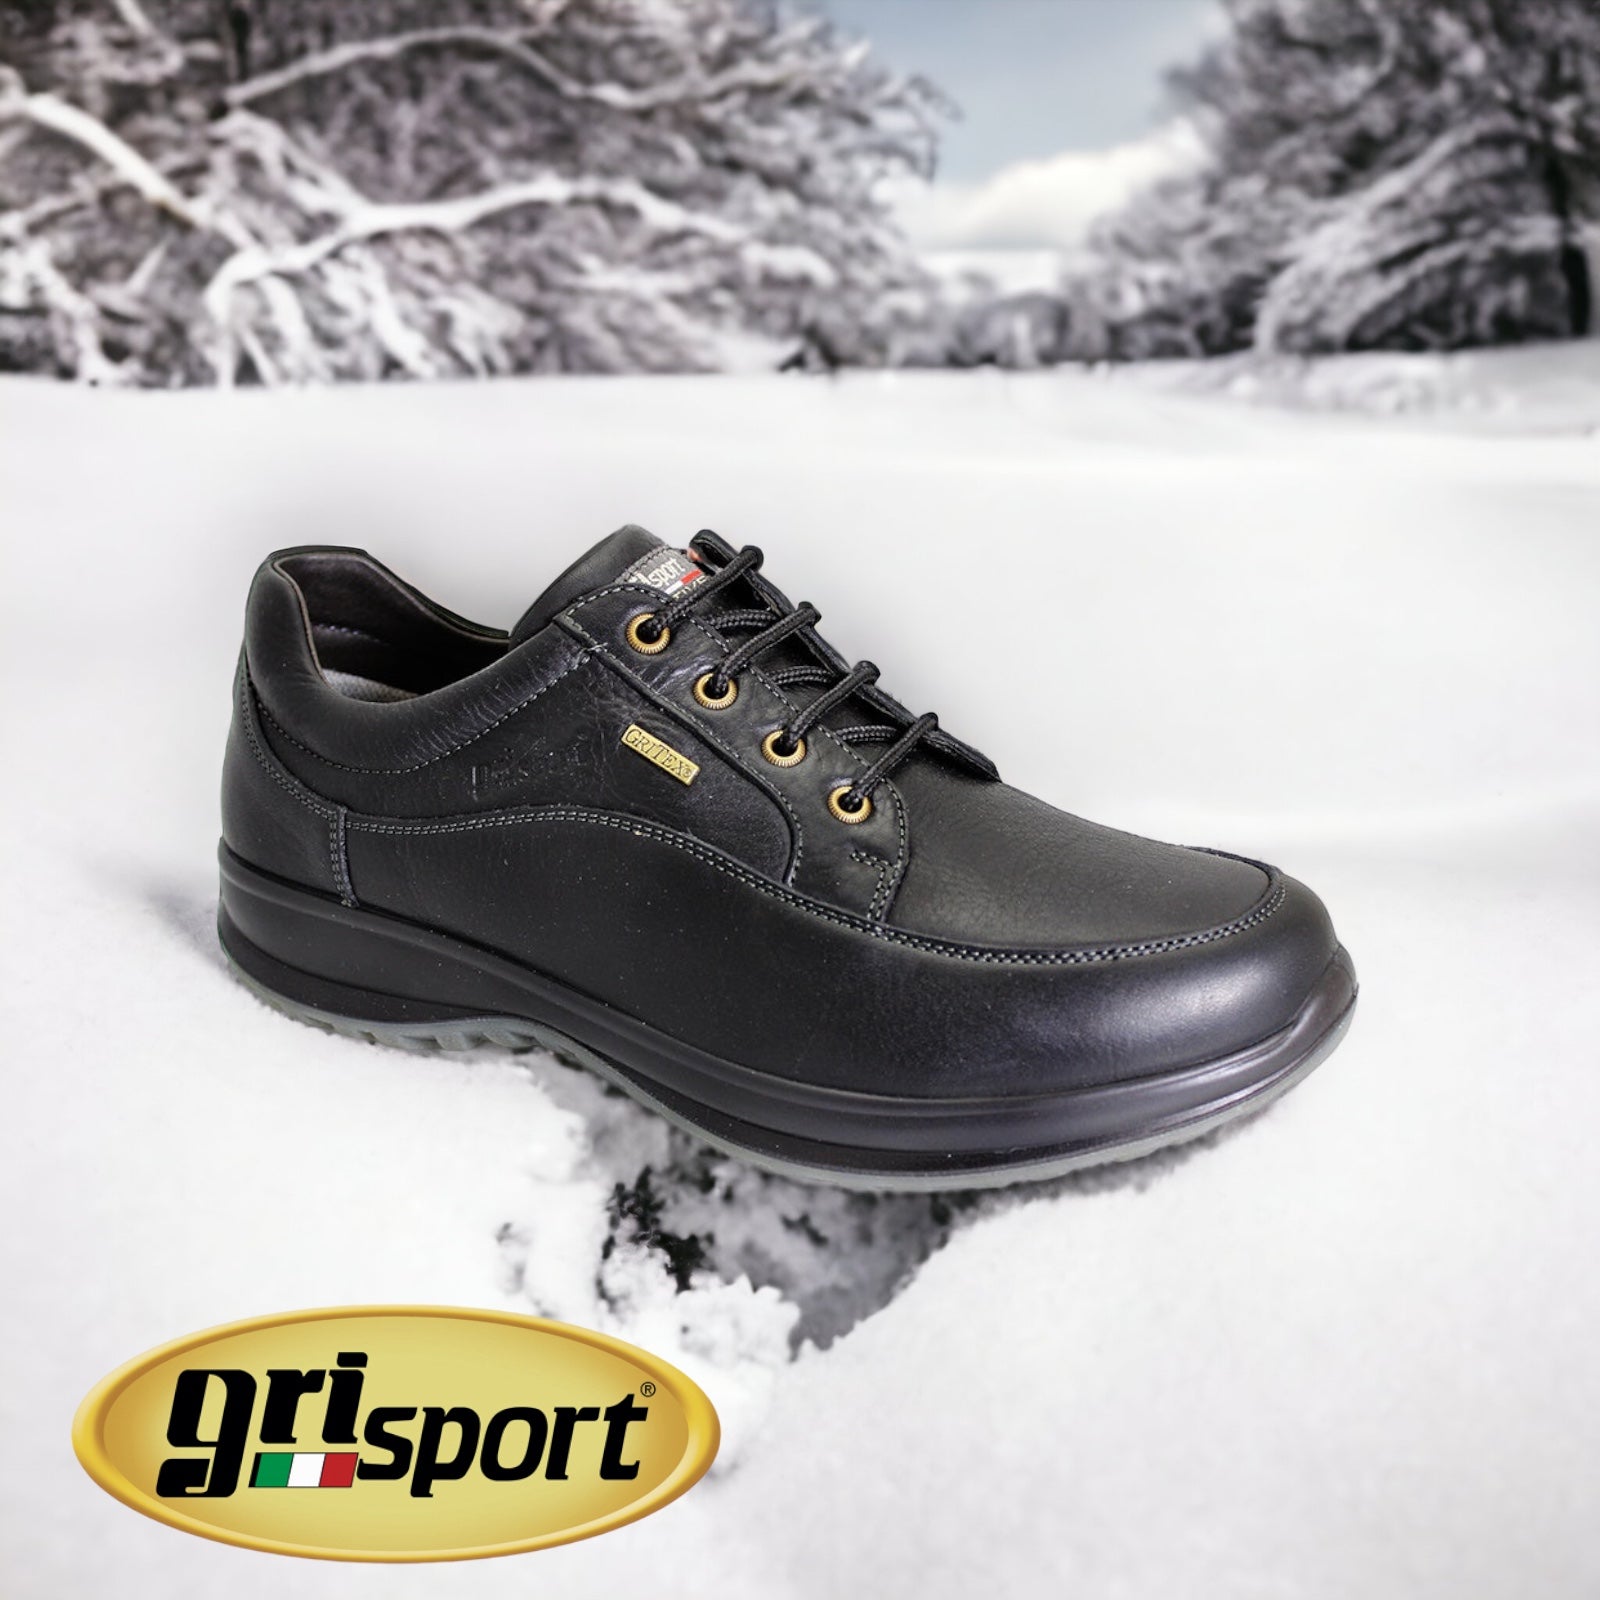 Gri-Sport Livingston waterproof black - Kirbys Footwear Ltd